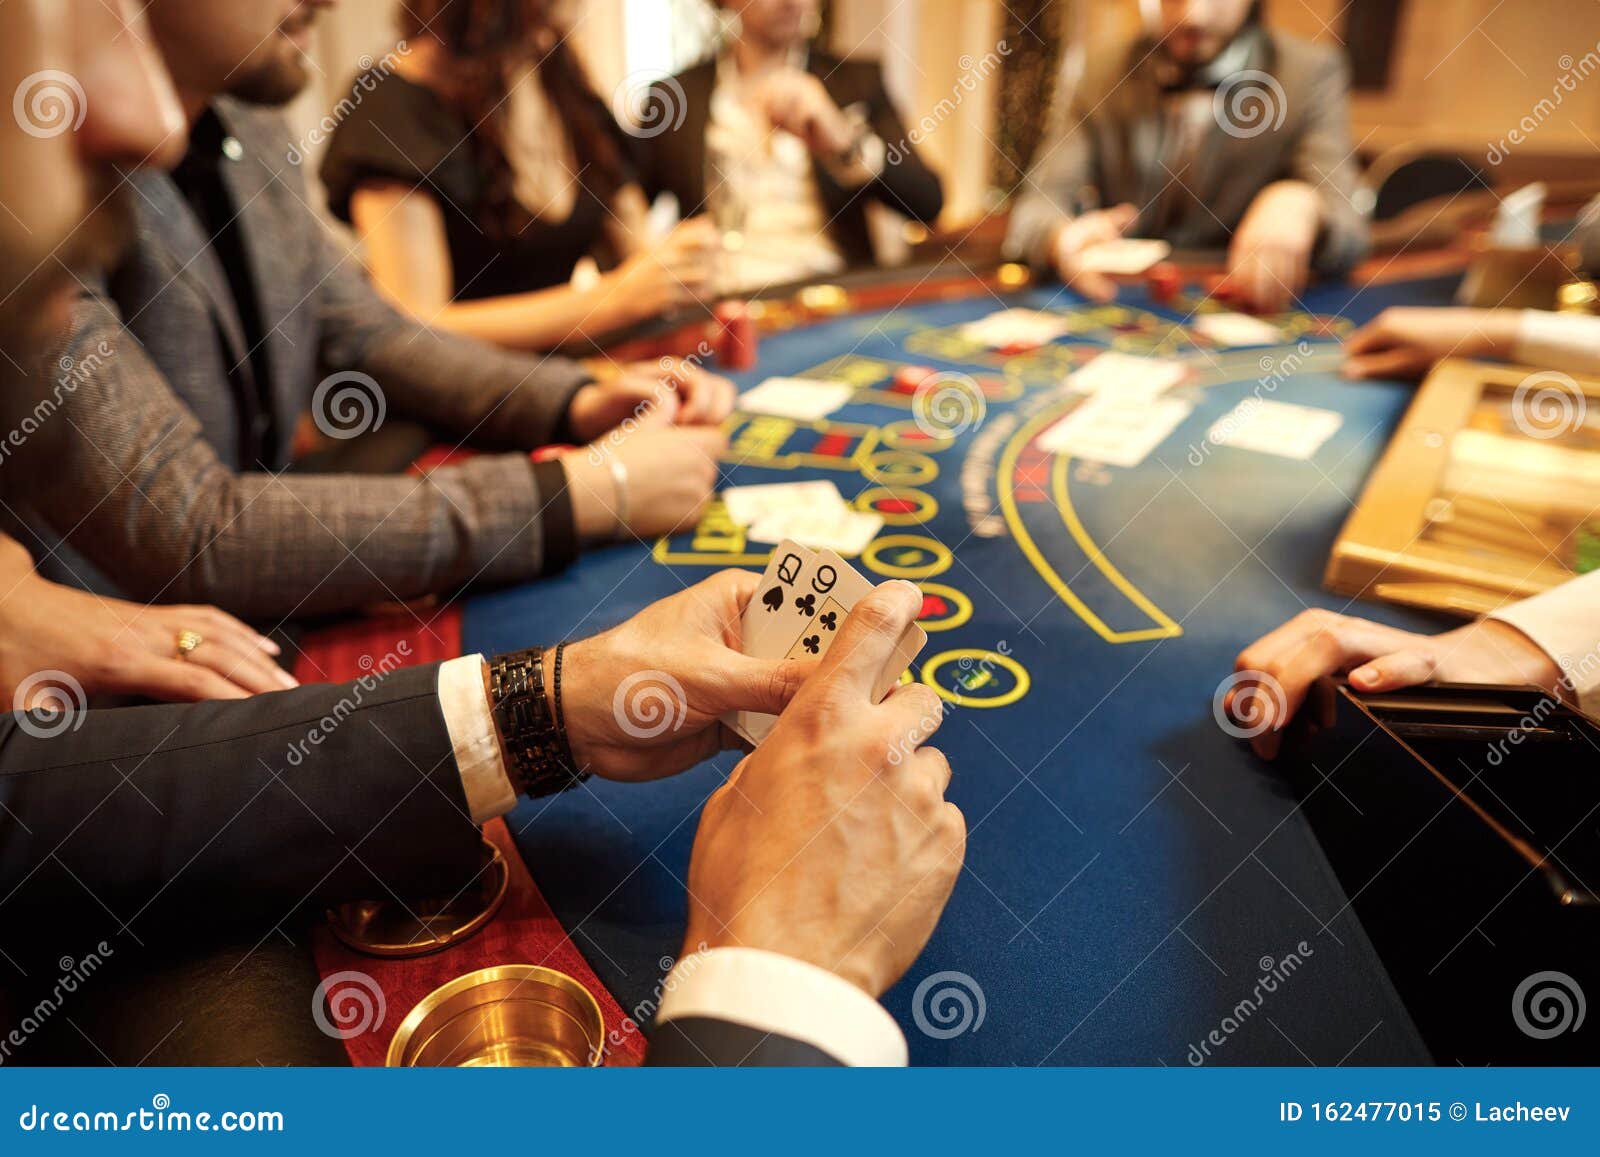 Für Leute, die mit im Casino spielen anfangen möchten, aber Angst haben, loszulegen